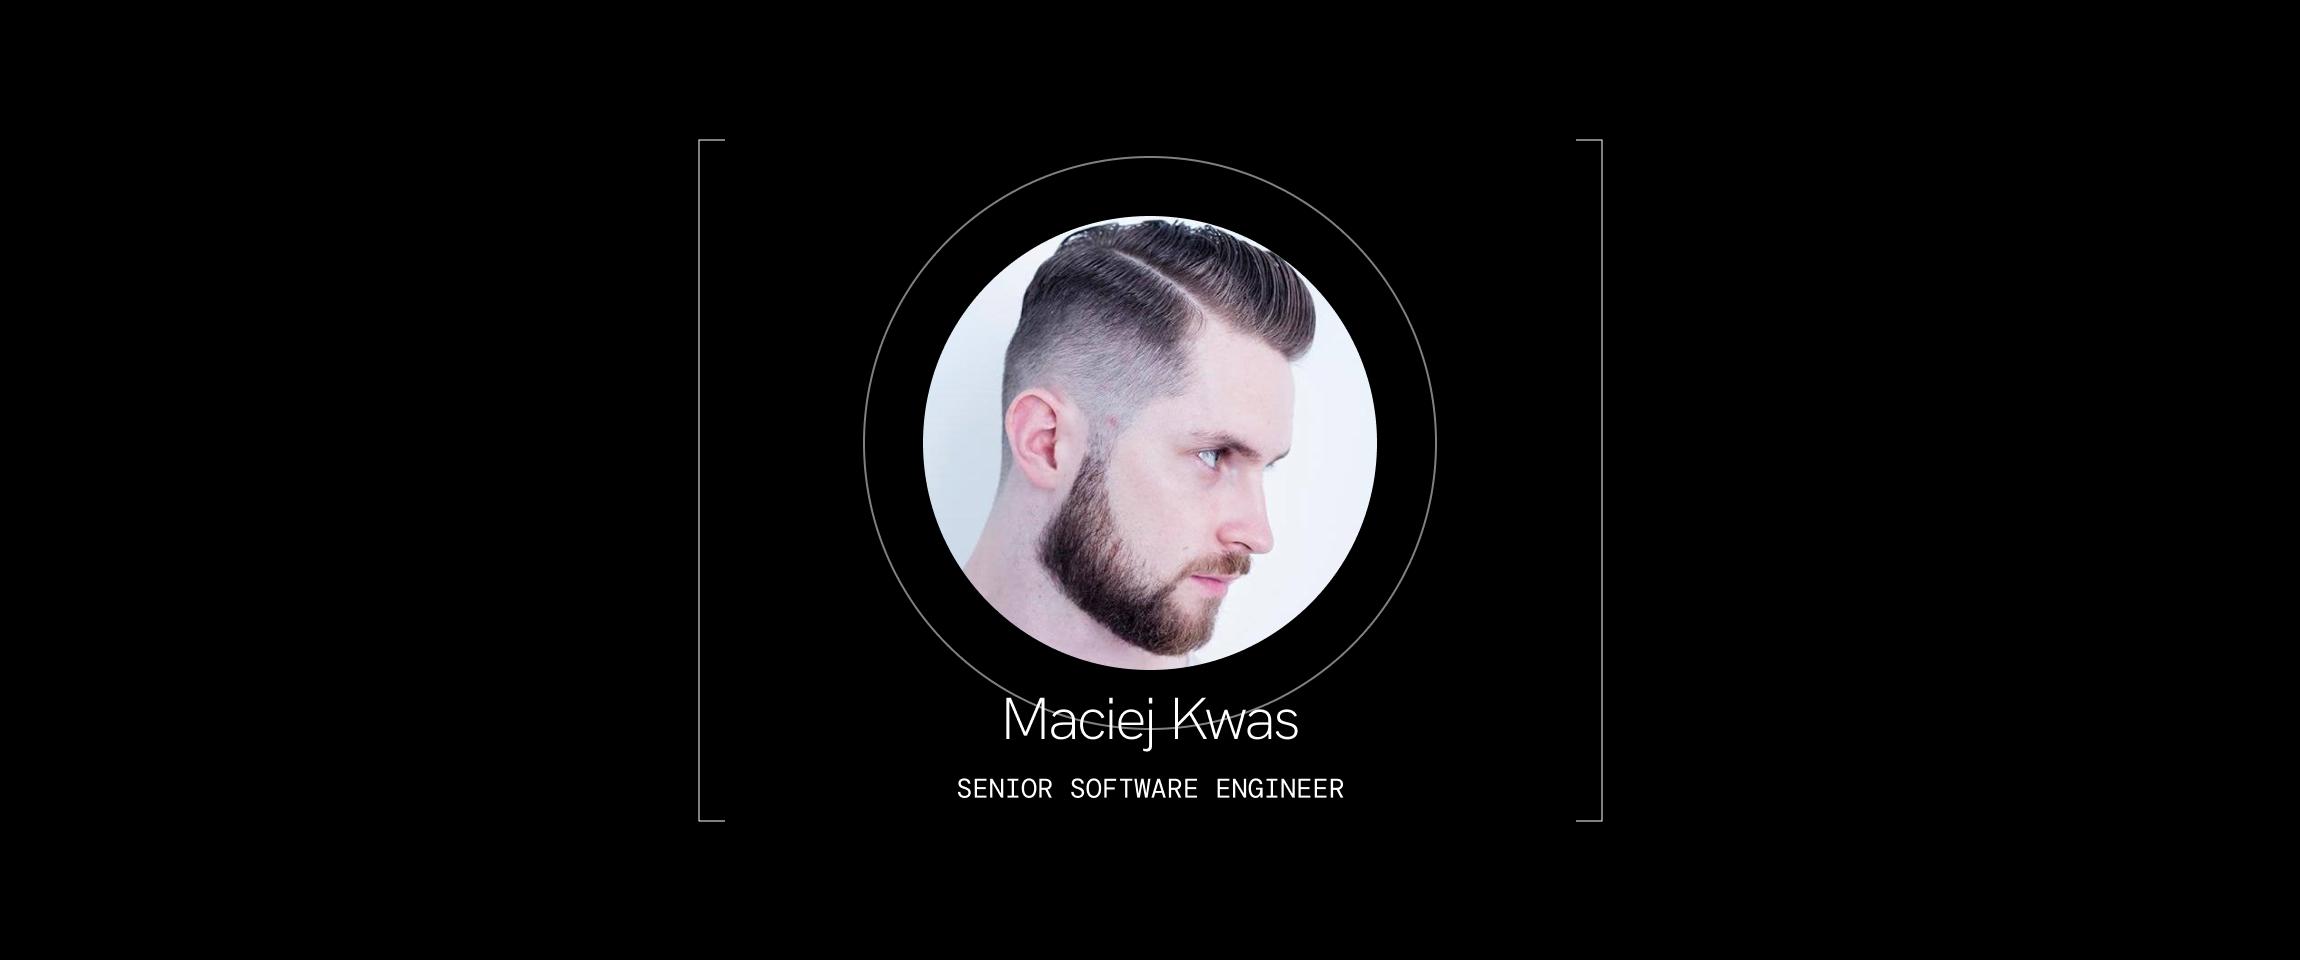 Maciej Kwas